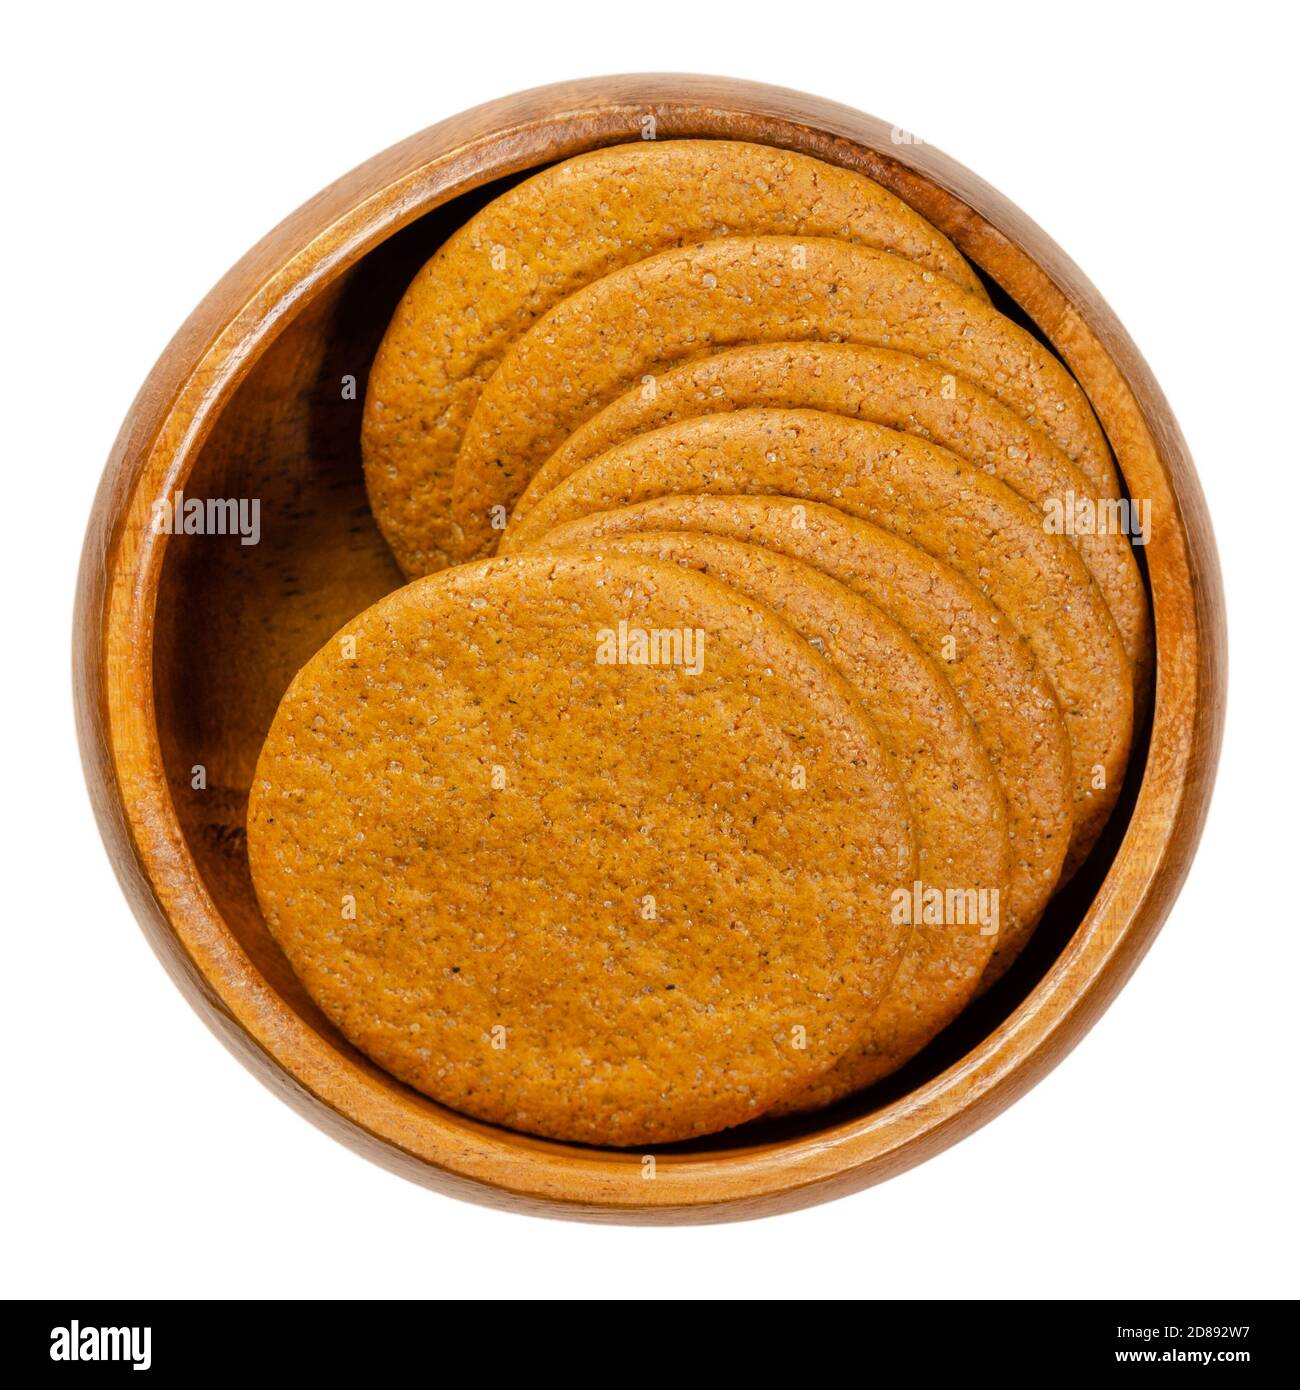 Lo zenzero scatta in una ciotola di legno. Zenzero scandinavo. Biscotti sottili di forma rotonda, aromatizzati con zenzero, cannella, melassa e chiodo di garofano. Foto Stock